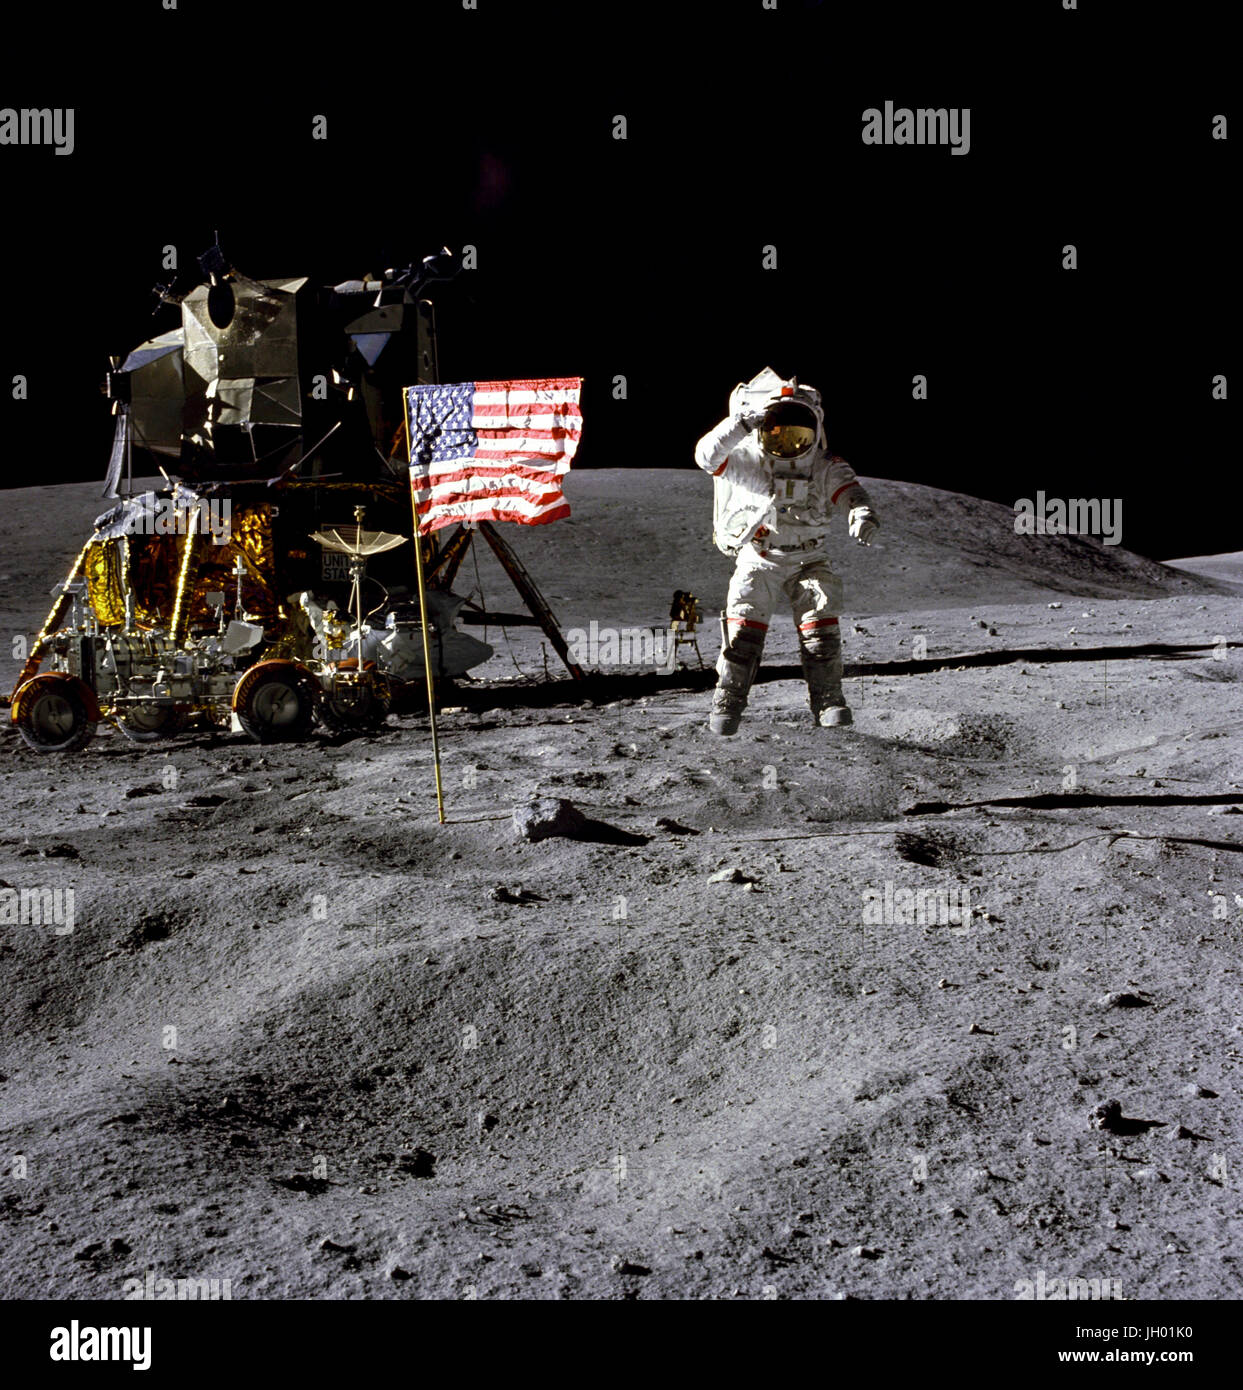 Astronaut John W. Young, Kommandant der Apollo 16-Mission Mondlandung, springt von der Mondoberfläche als He grüßt die US-Flagge am Landeplatz Descartes während der ersten Apollo 16 Extravehicular Activity (EVA-1). Astronaut Charles M. Duke Jr., Pilot der Mondlandefähre, nahm dieses Bild. Die Mondlandefähre (LM) "Orion" ist auf der linken Seite. Das Lunar Roving Vehicle ist neben der LM geparkt. Das Objekt hinter Young im Schatten der LM ist der weit Ultraviolett Kamera/Spektrograph. Stone Mountain dominiert den Hintergrund in dieser lunar Szene. Fotograf: NASA / Charles M. Duke, Jr. Stockfoto